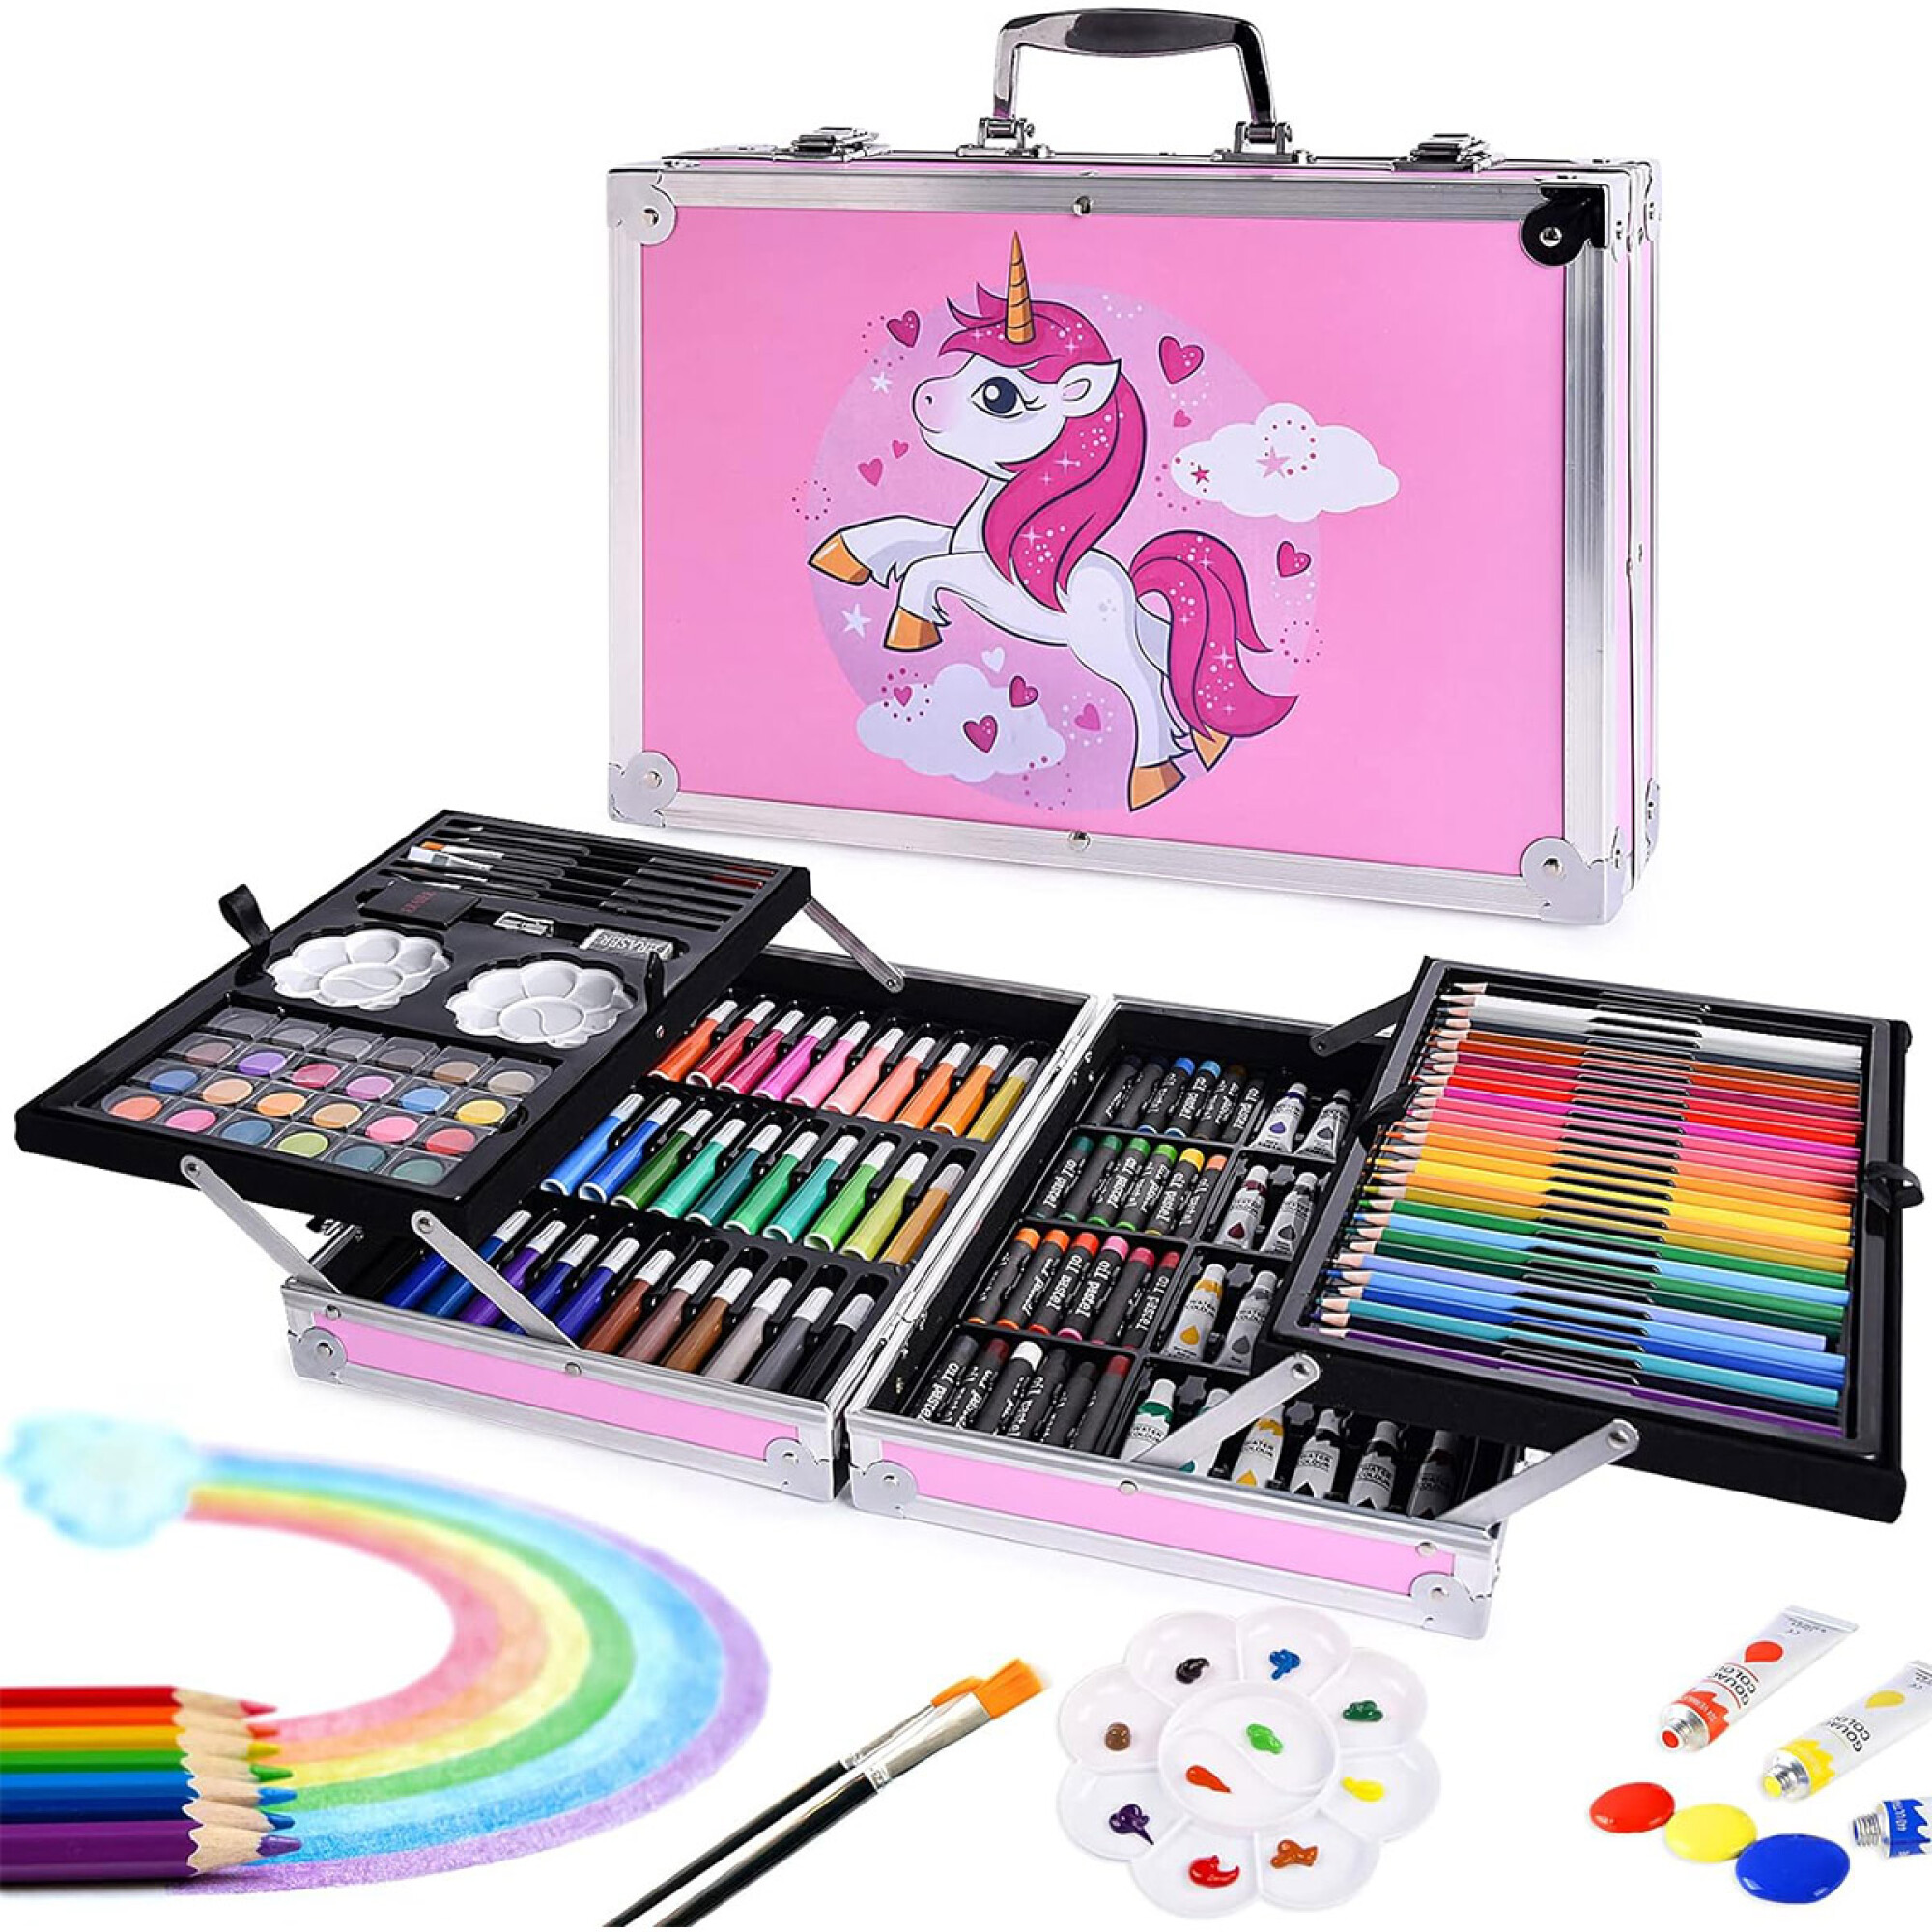 Kit escolar x 11 piezas, unicornio rosado